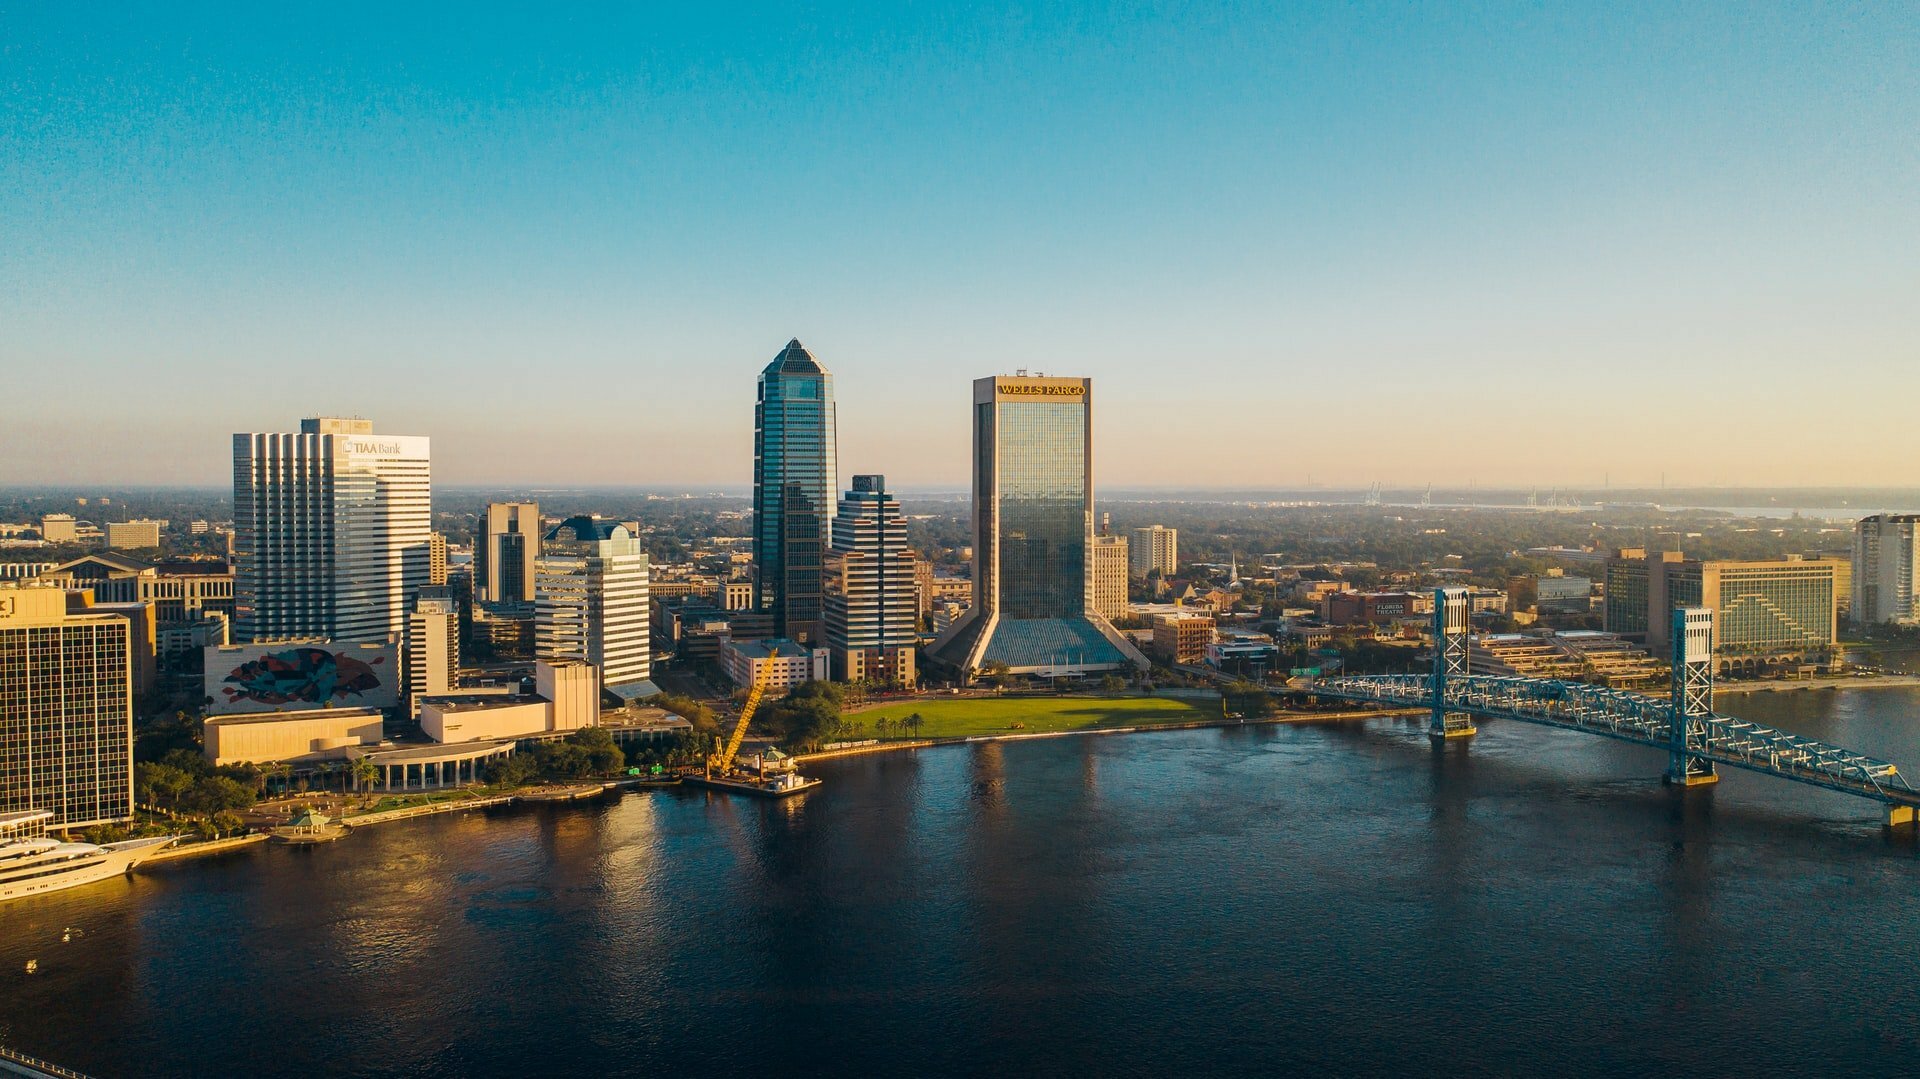 skyline of Jacksonville Florida